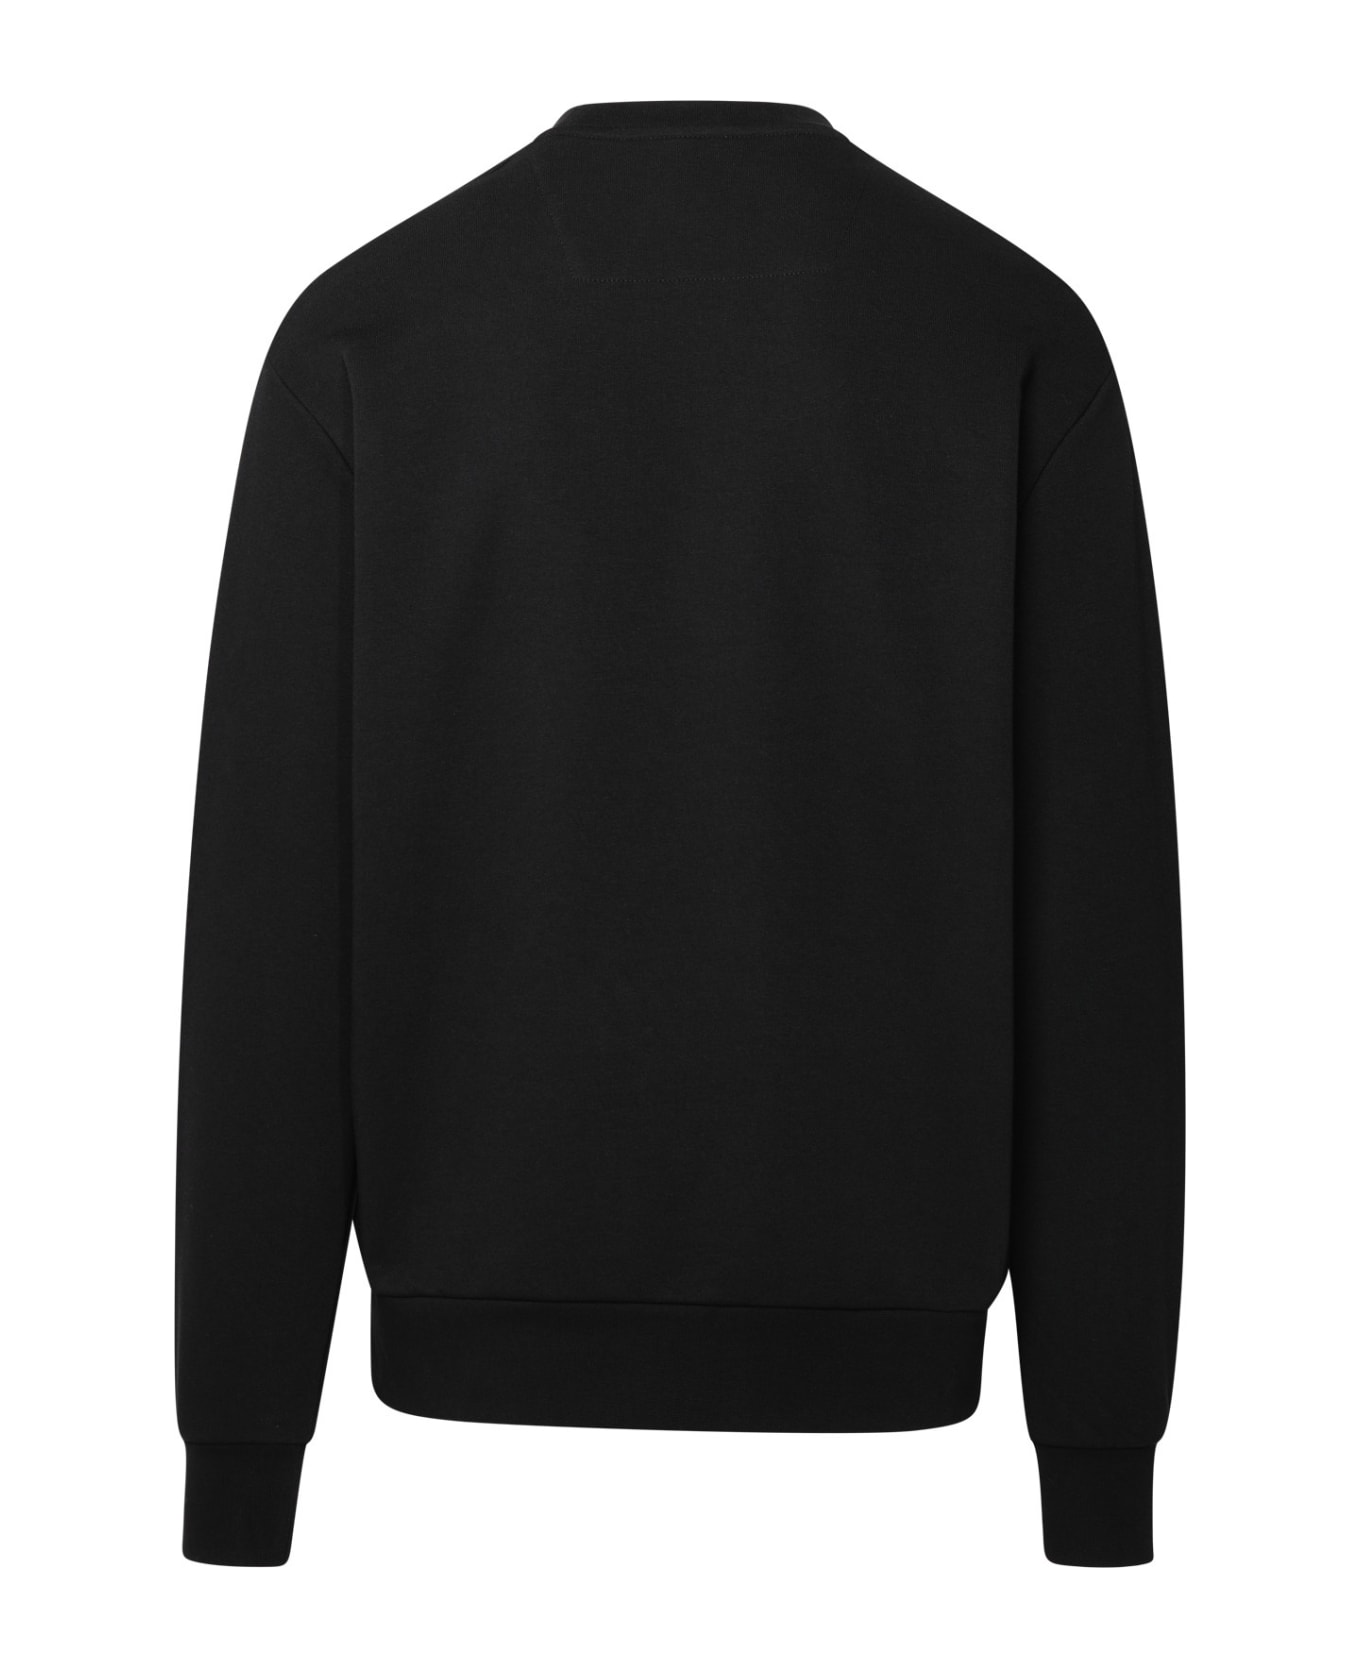 Philipp Plein Black Cotton Blend Sweatshirt - Black